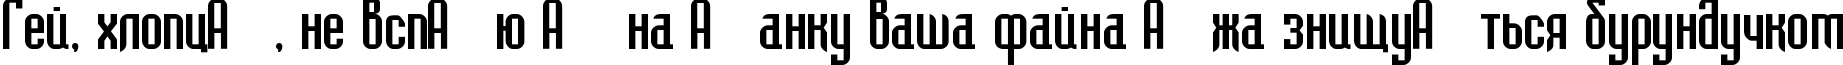 Пример написания шрифтом Bedrock-Cyr текста на украинском